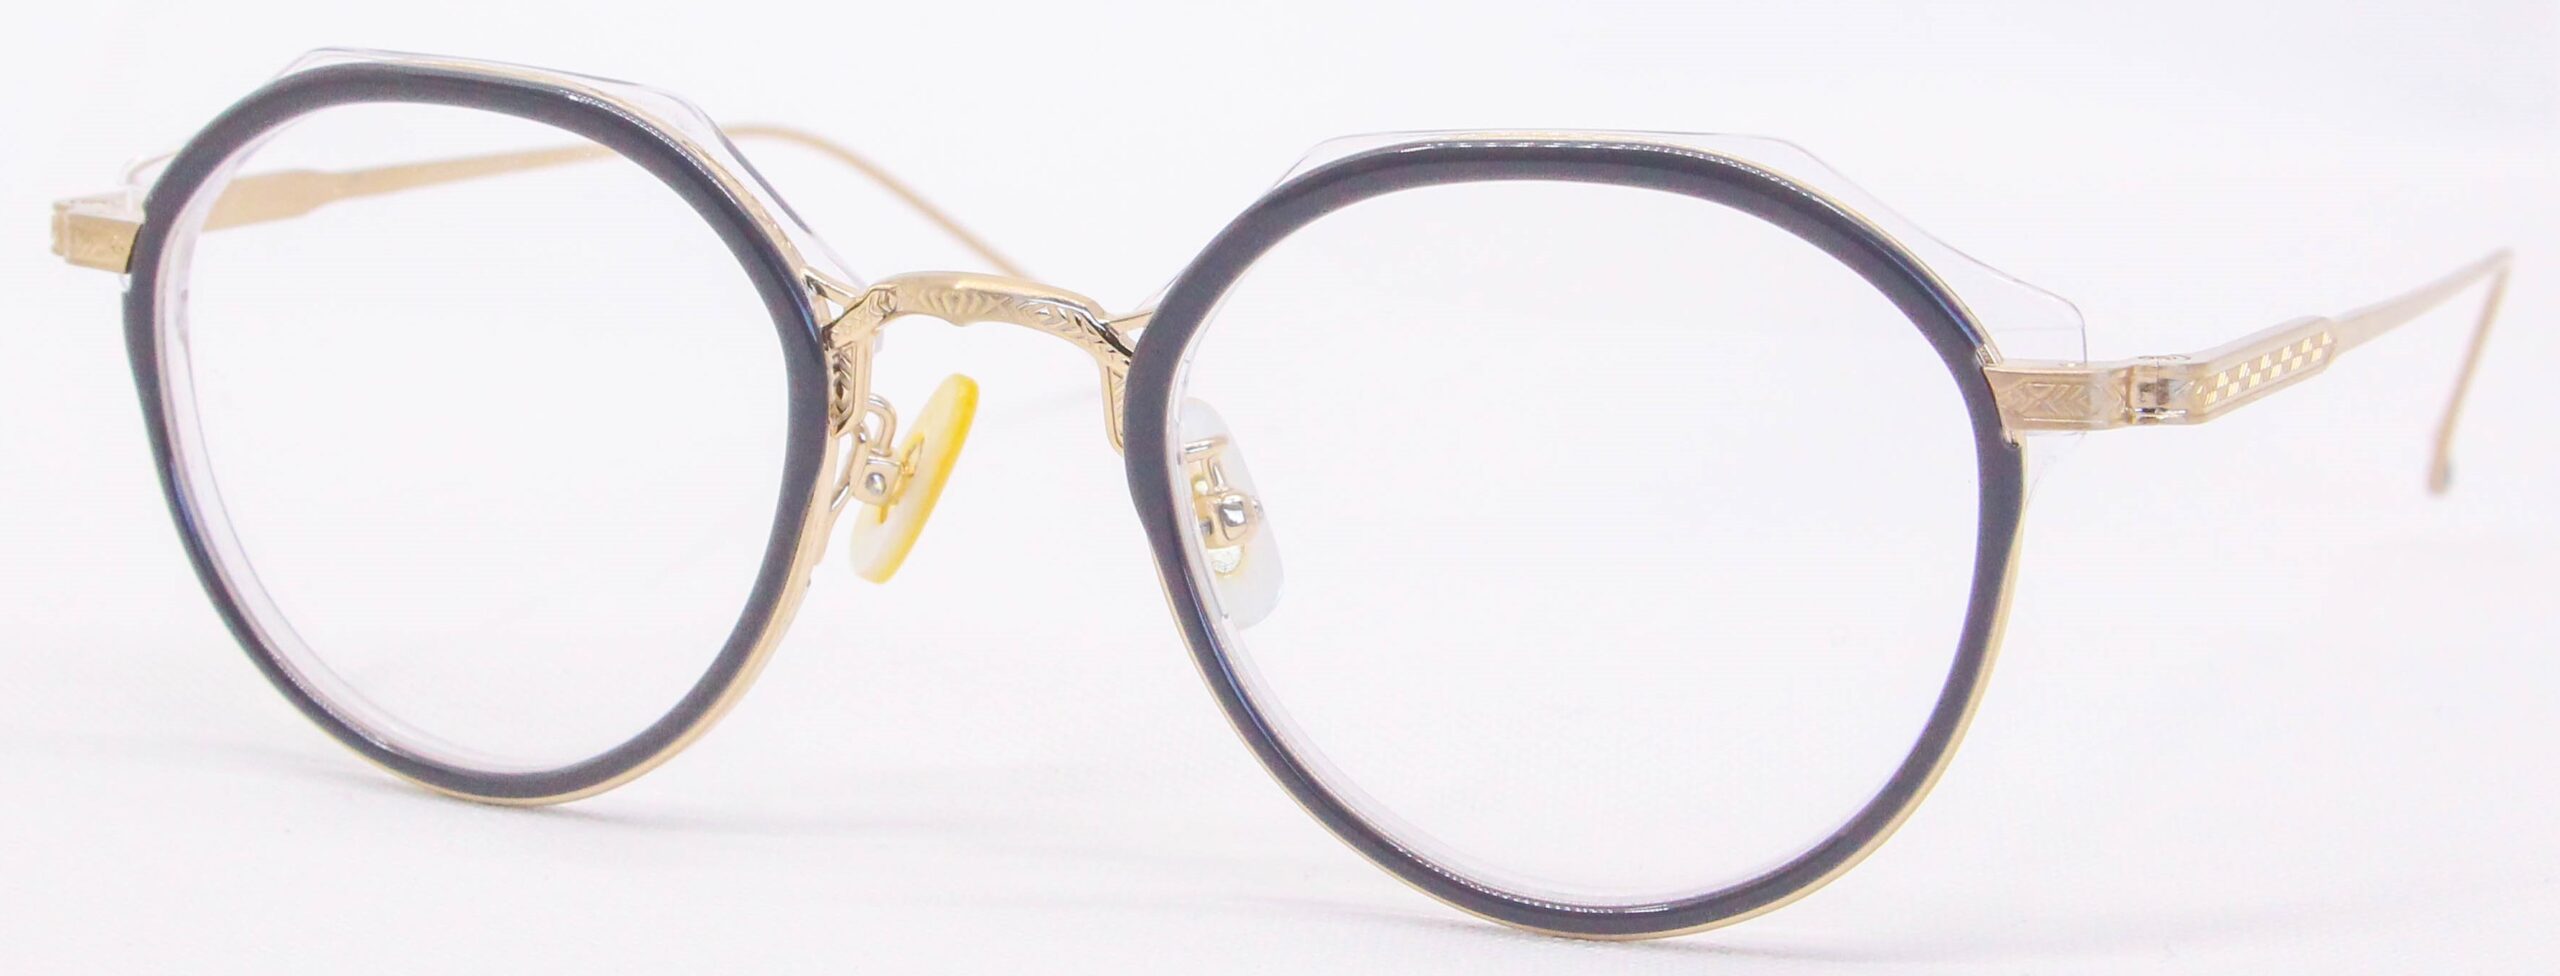 眼鏡のカラータイプC-2 Gray-Clear/Gold